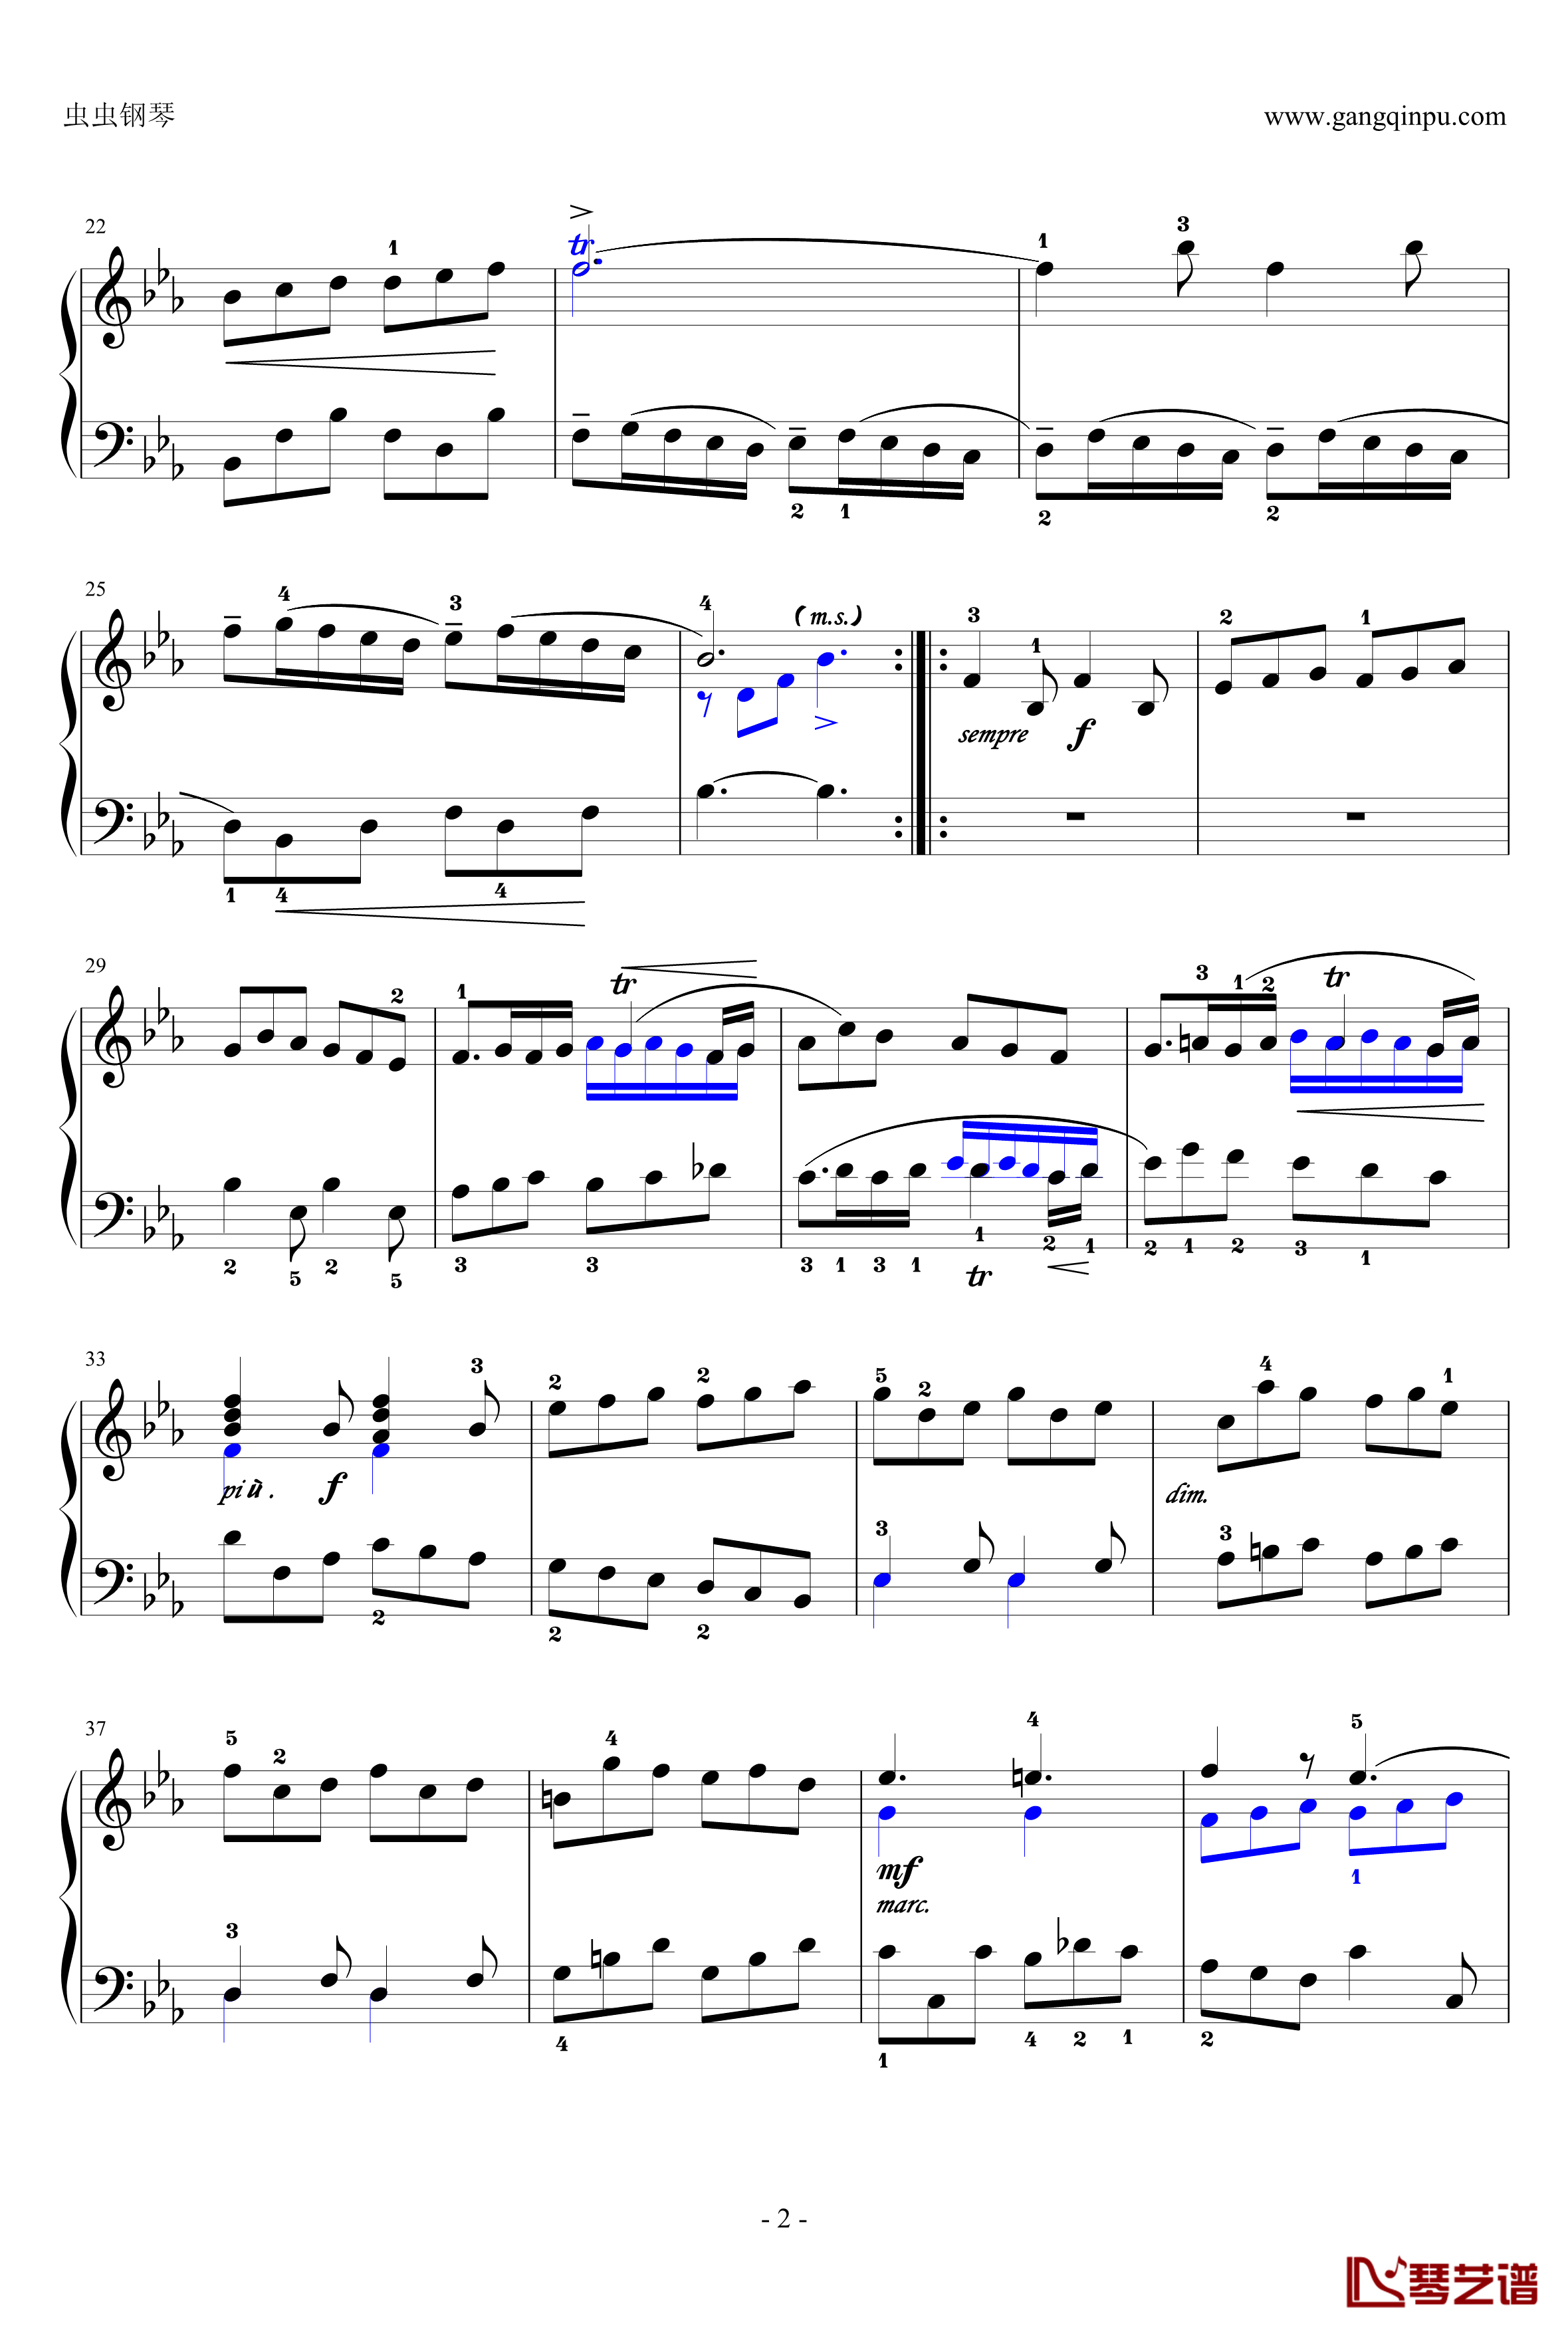 基格钢琴谱-法国组曲四 No.6-奥芬巴赫2